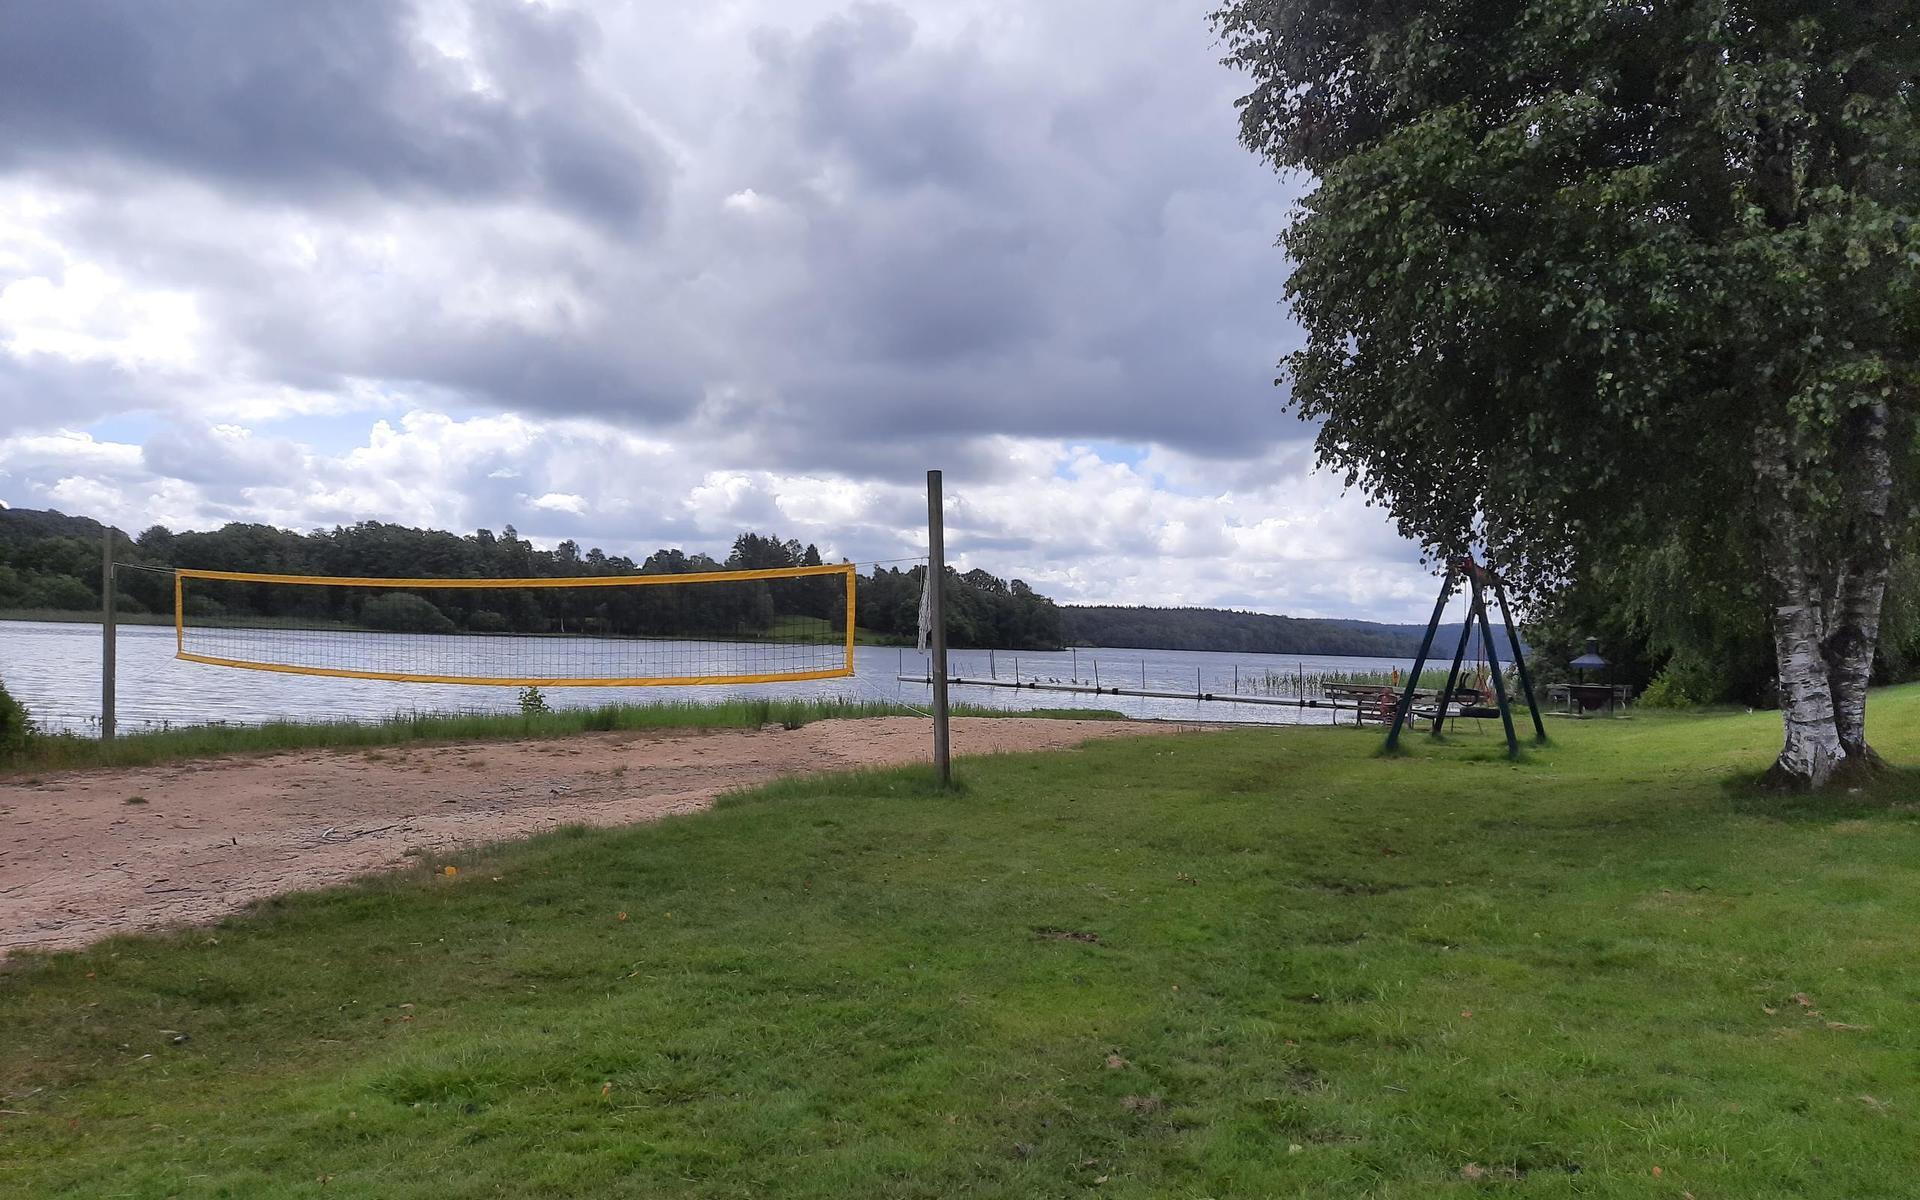 Vid Mäsen finns det möjlighet att spela beachvolleyboll. Sjön är för övrigt Hallands djupaste.